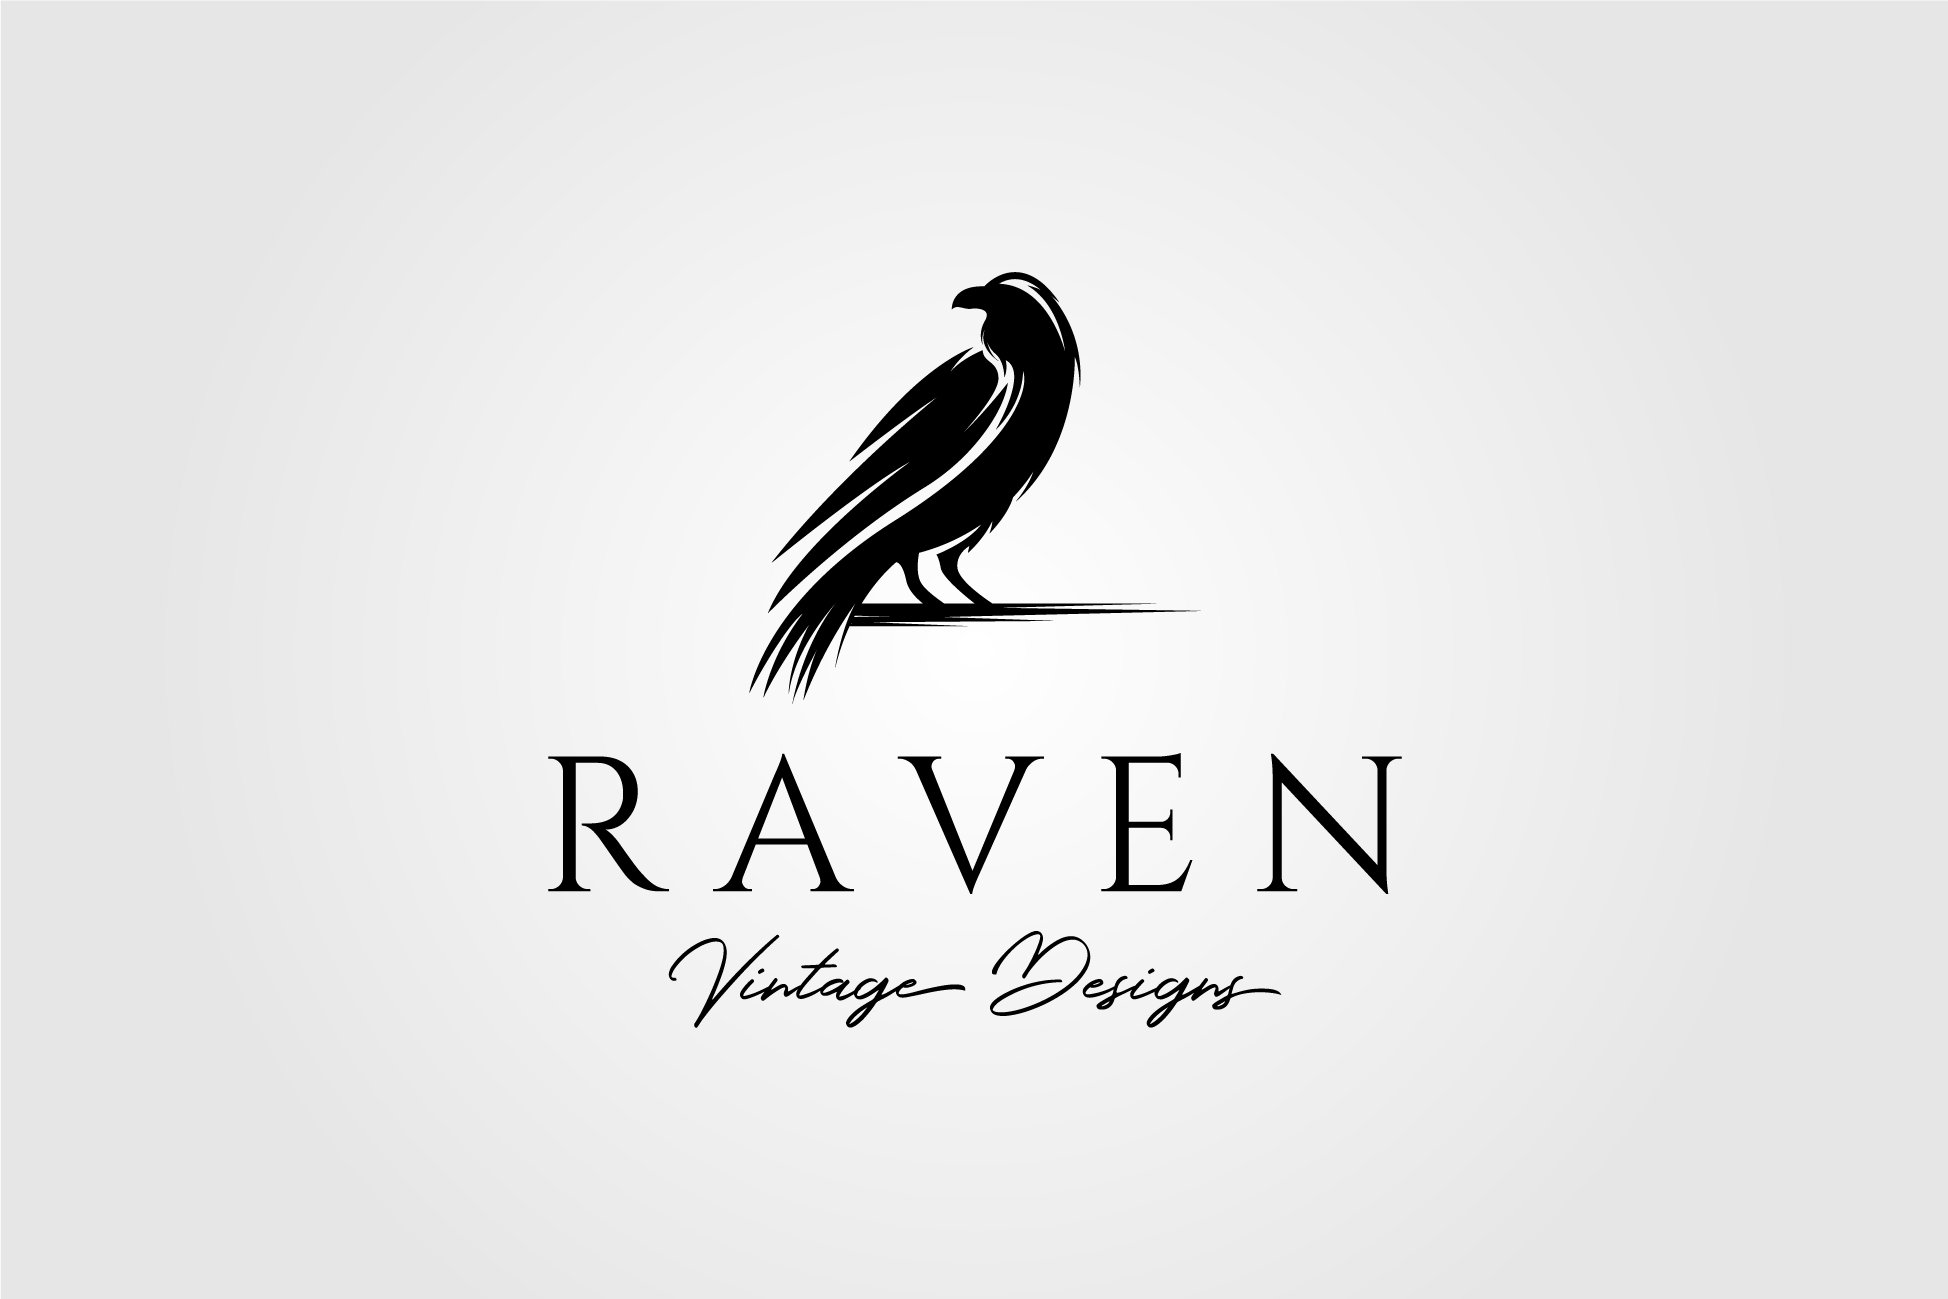 Raven or Crow Bird Logo Vector cover image.